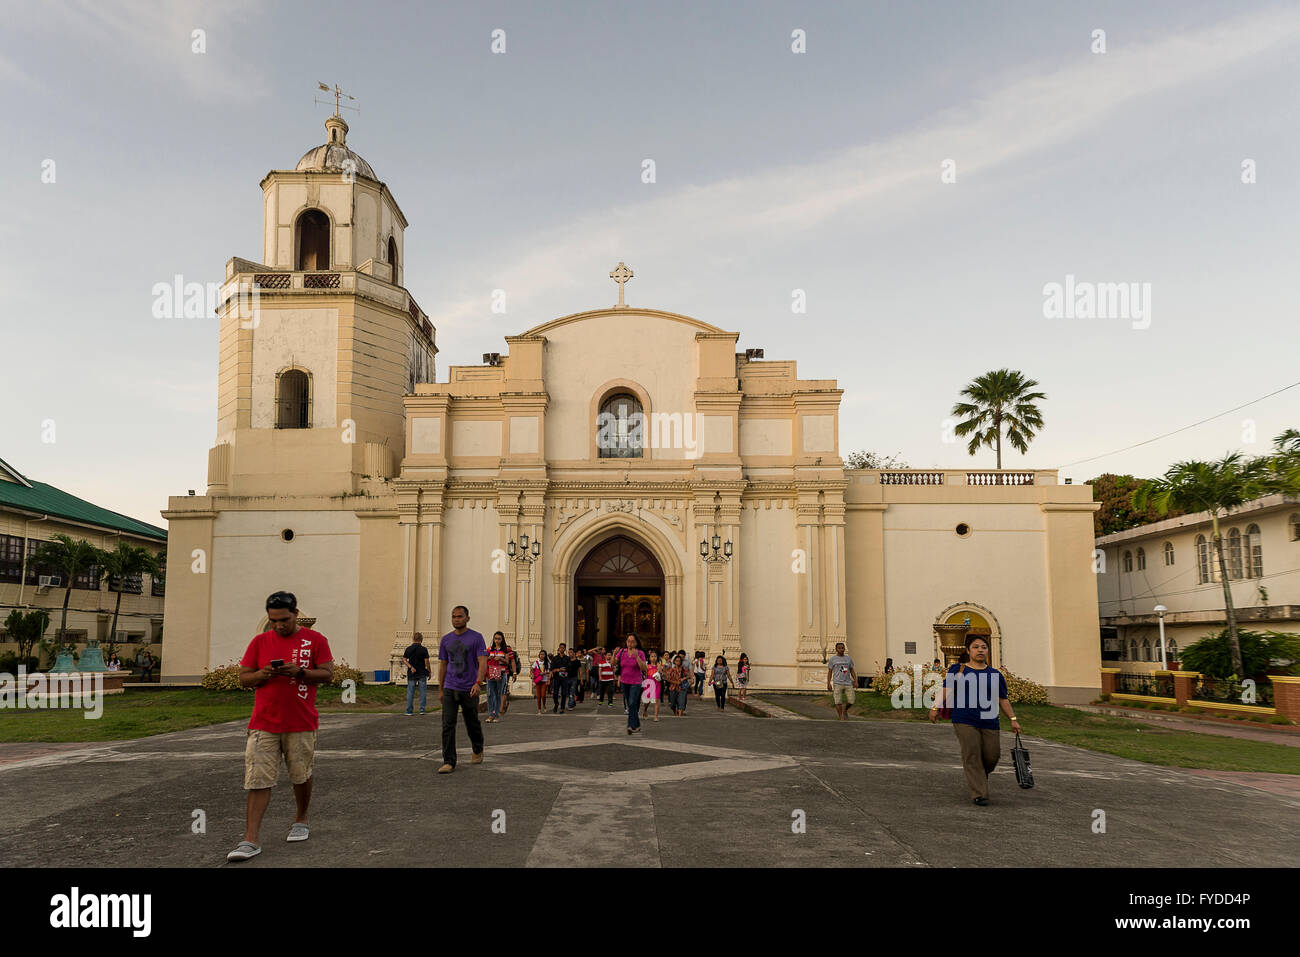 Iloilo, Philippines - Le 13 février 2016. Église historique à Iloilo, aux Philippines. Des gens qui marchent. Banque D'Images